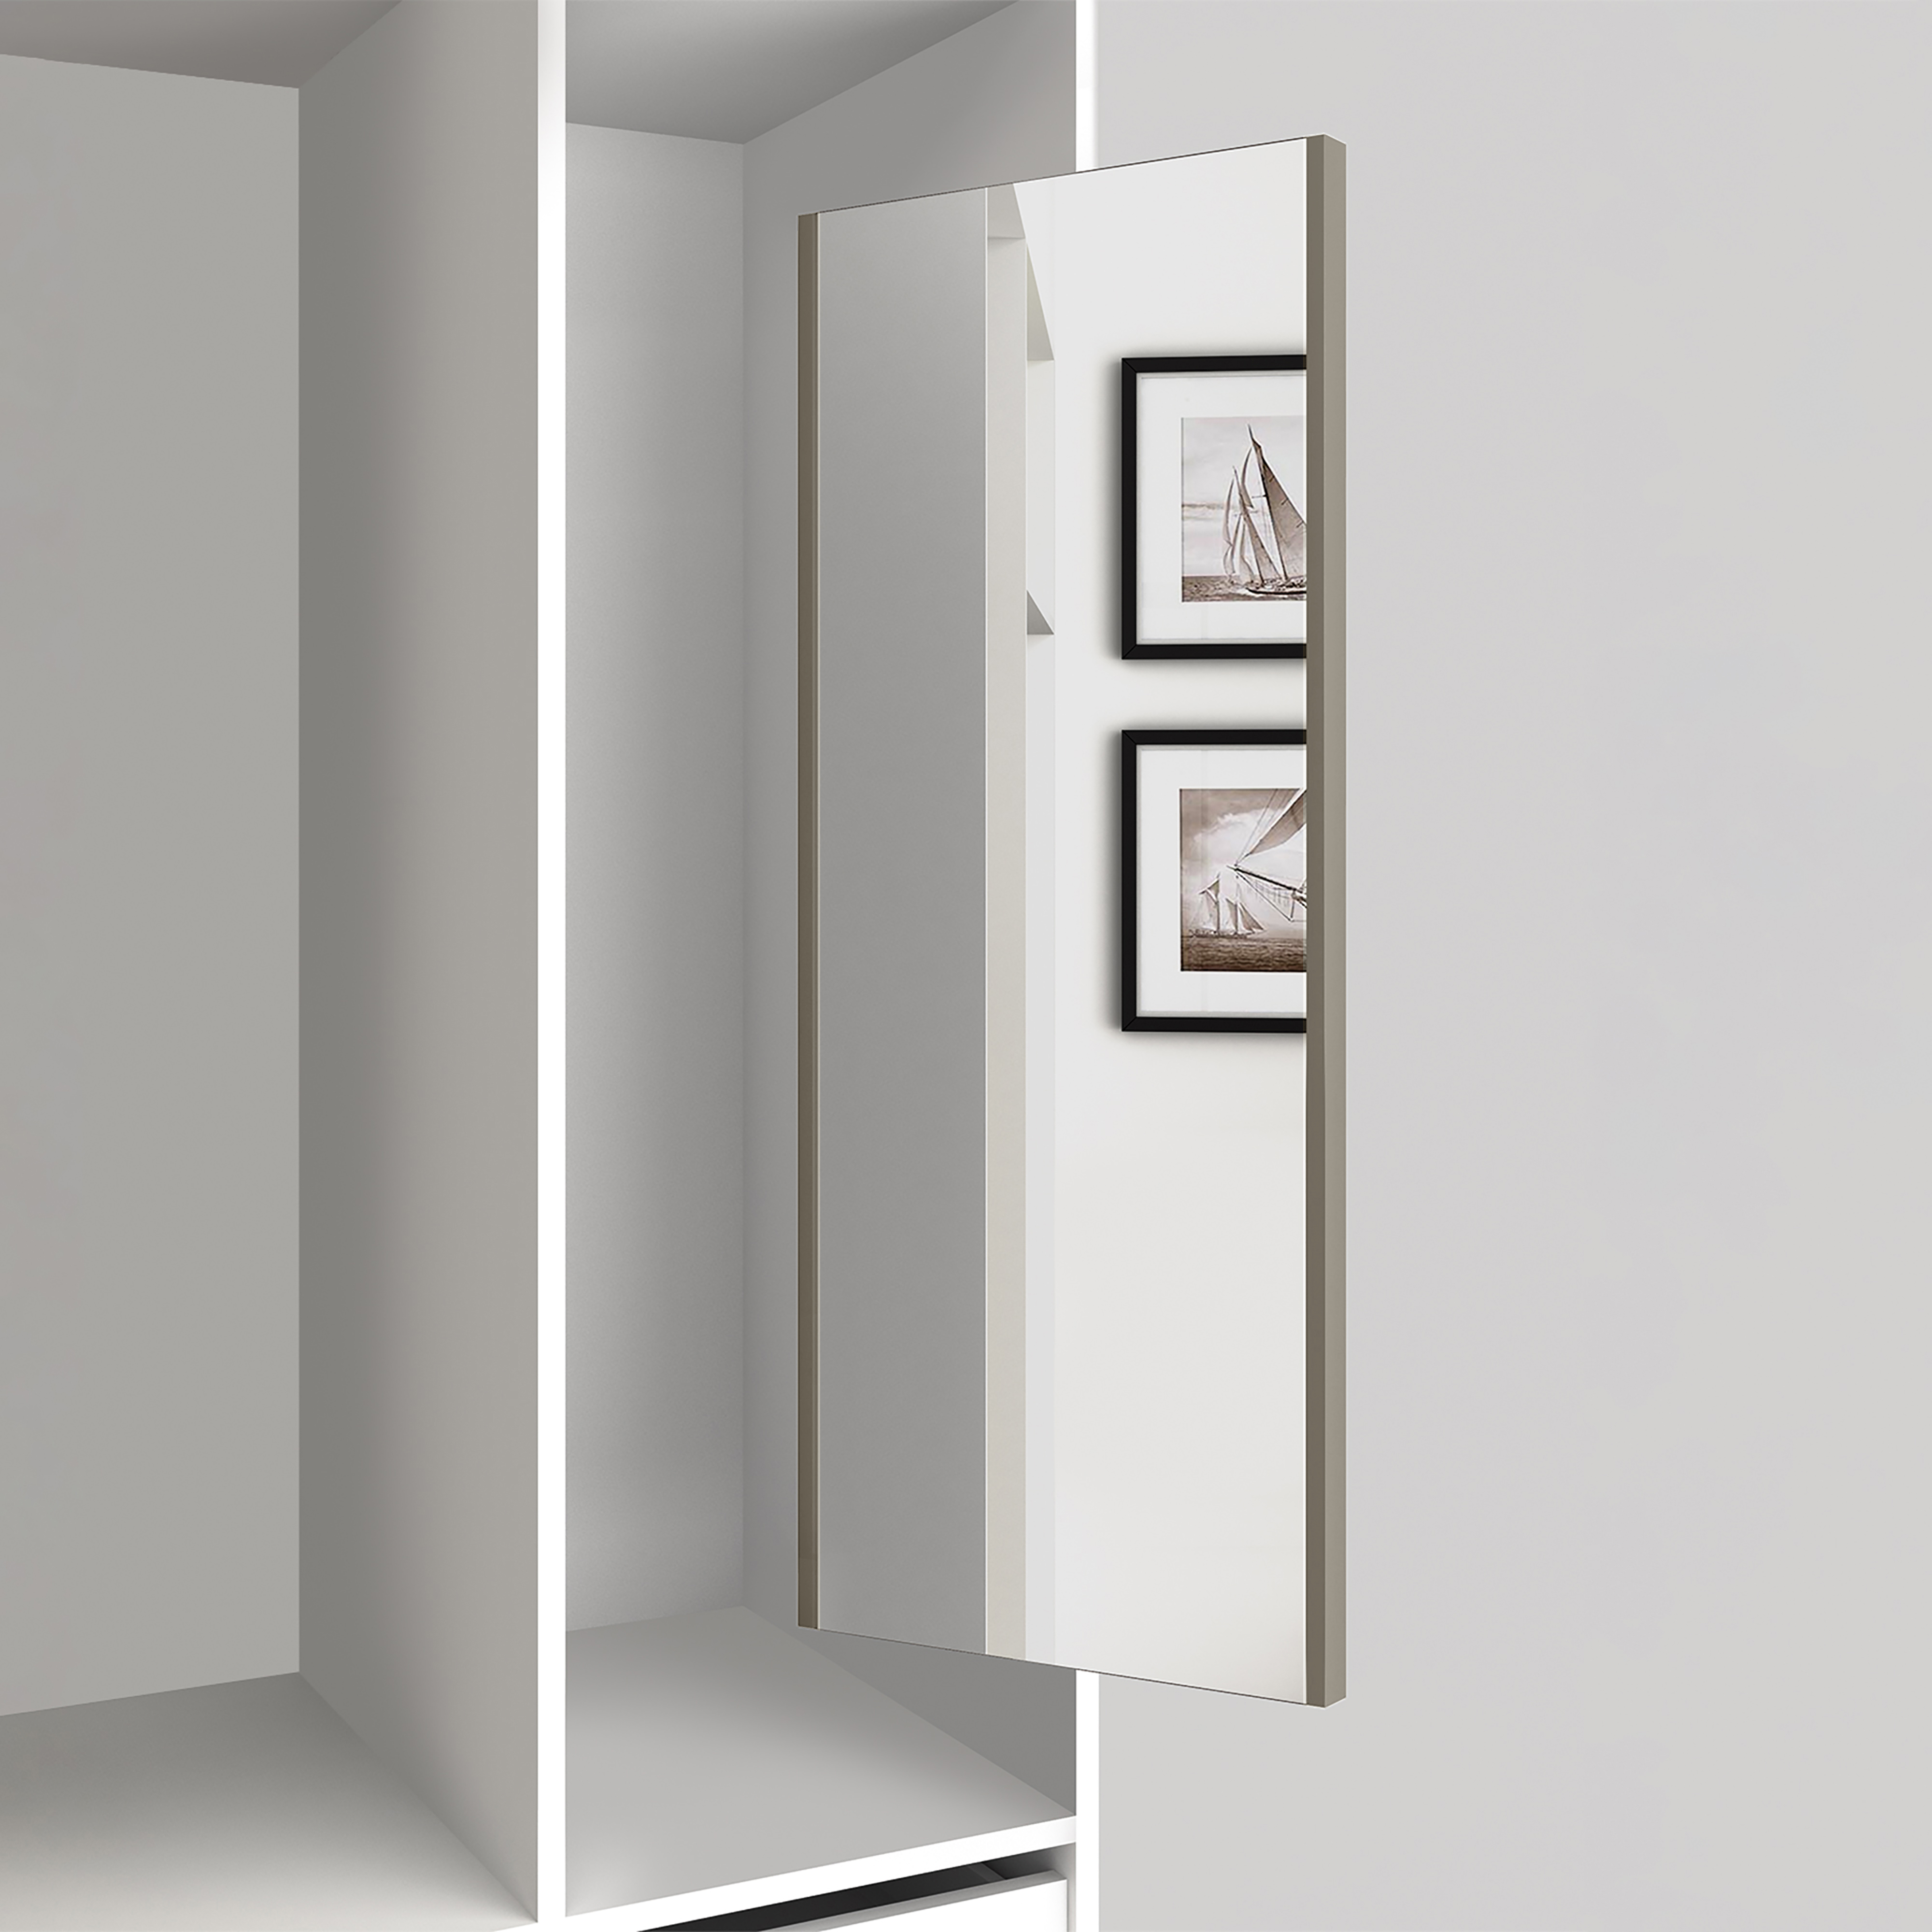  Miroir extractible pour l'interieur de l'armoire, Peint gris pierre, Acier et Plastique et Verre